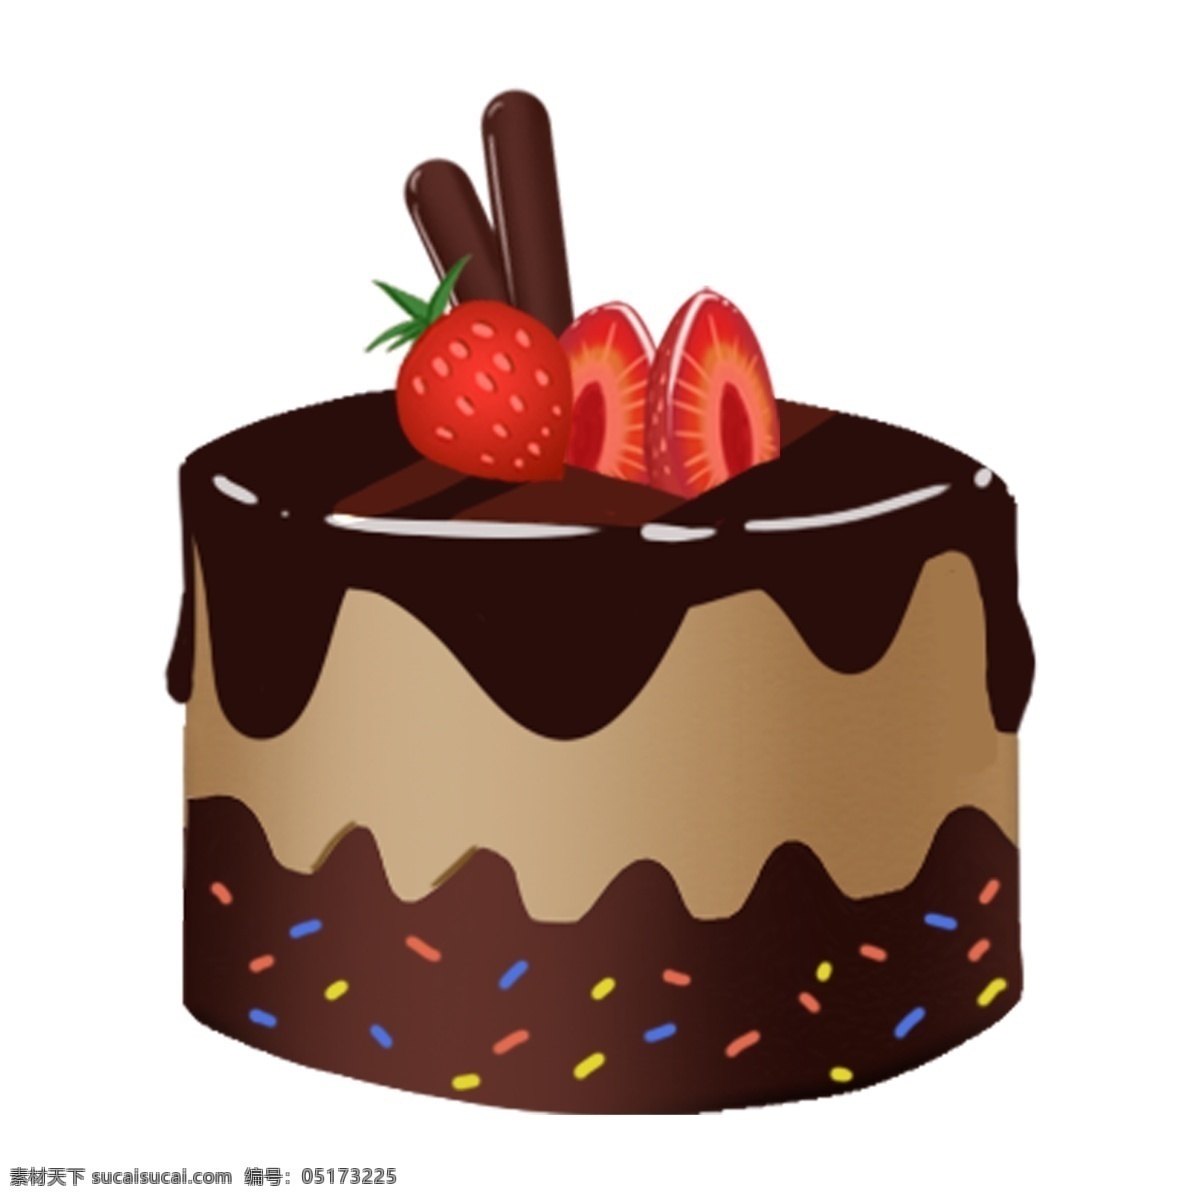 巧克力 奶油 水果 蛋糕 巧克力蛋糕 奶油蛋糕 水果蛋糕 精美甜品 草莓 巧克力棒 圆形蛋糕 卡通蛋糕插画